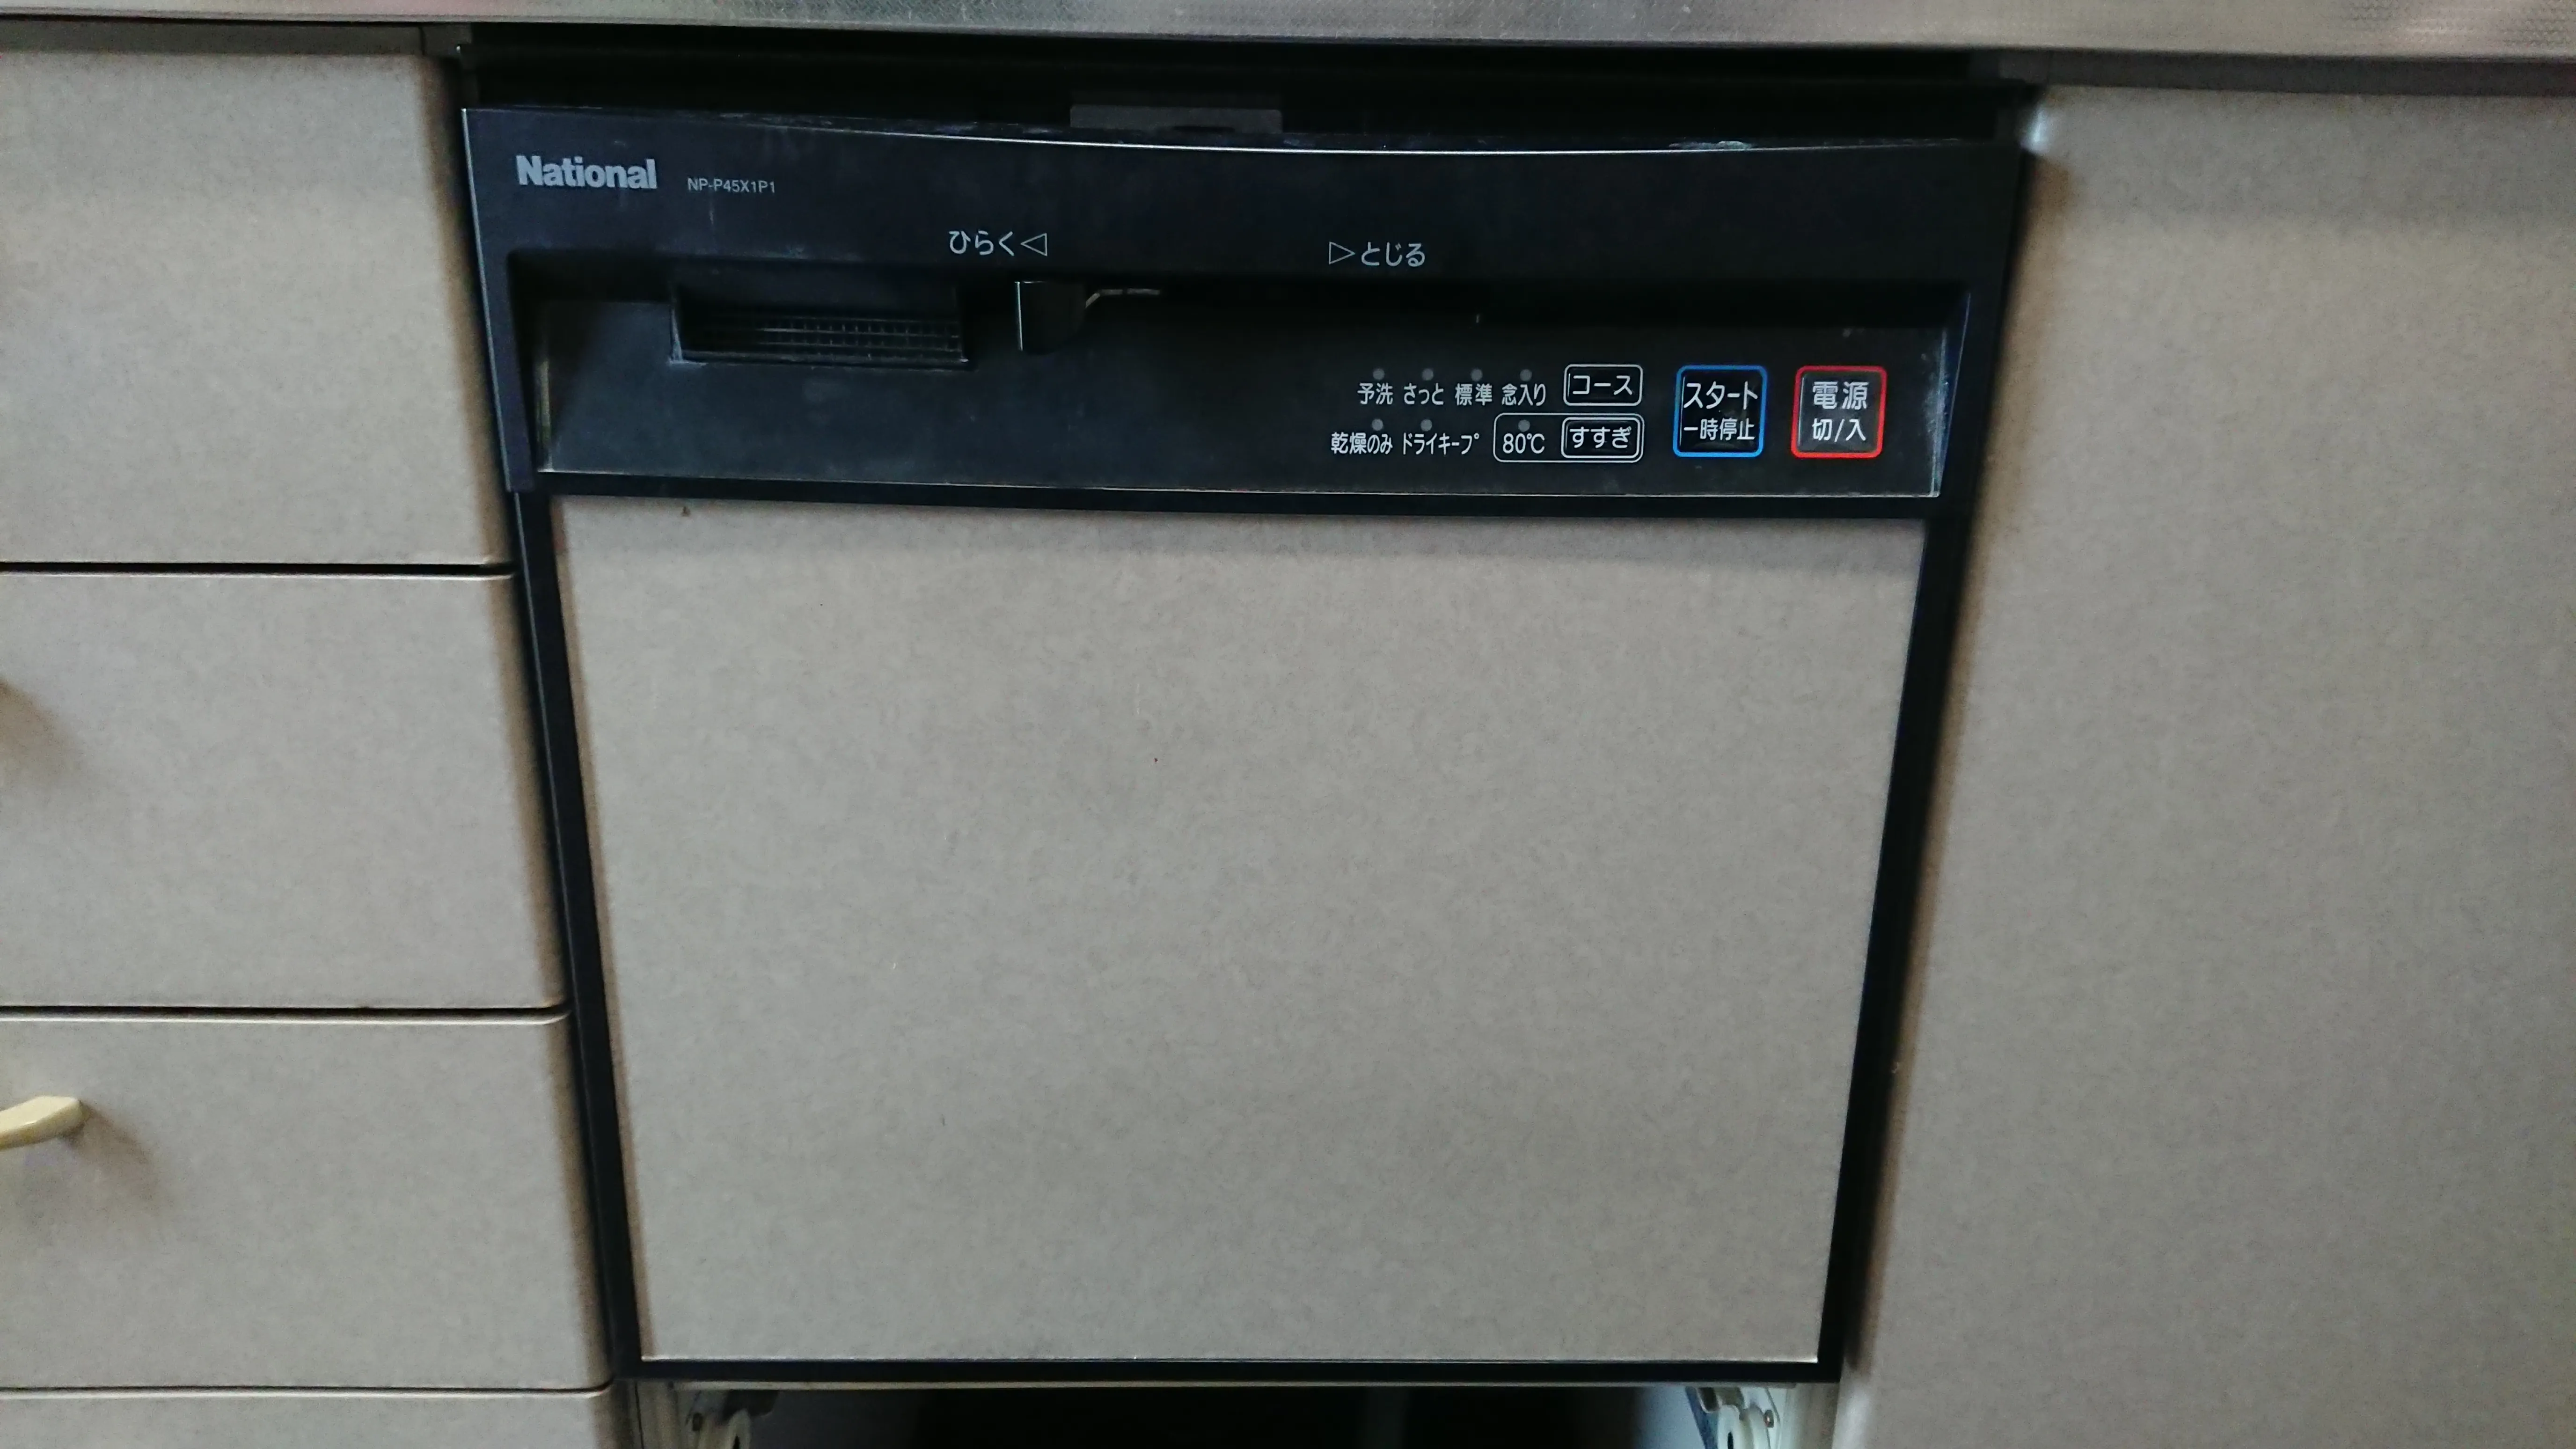 舗 家電と住宅設備のジュプロNP-45VS9S パナソニック V9シリーズ 食器洗い乾燥機 ミドルタイプ ドアパネル型